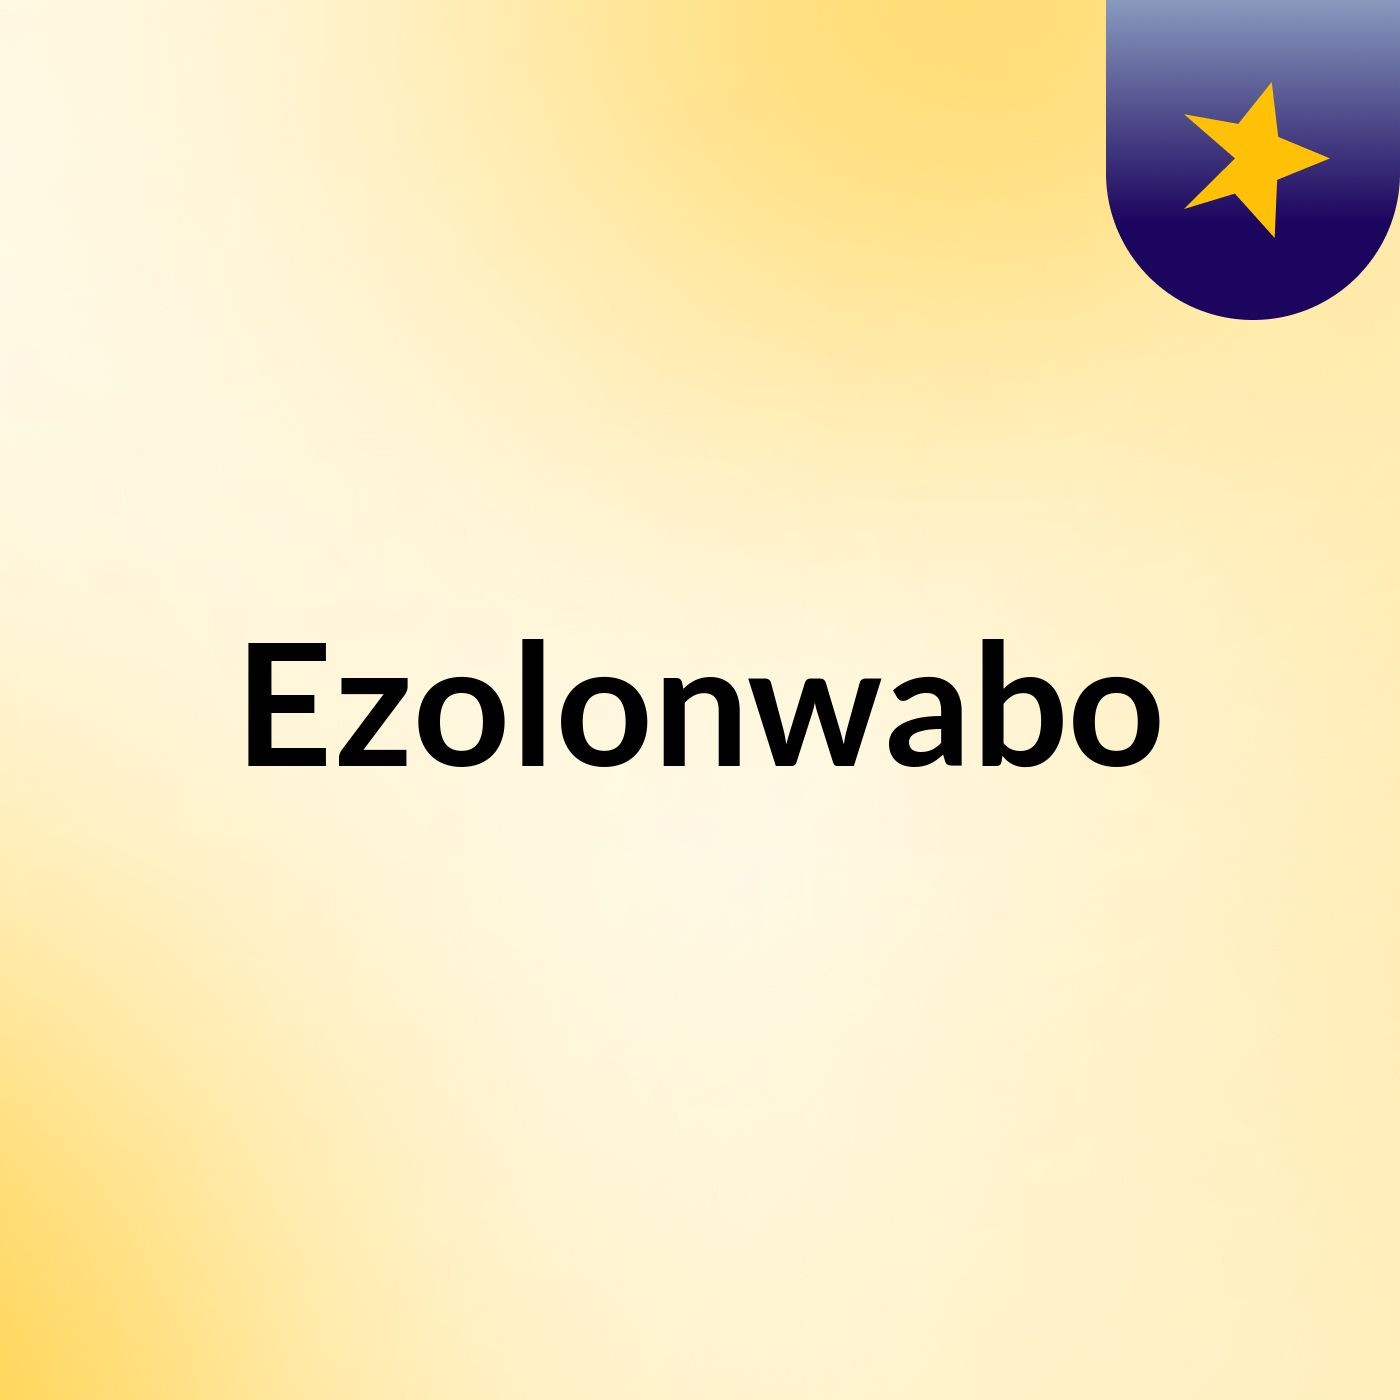 Ezolonwabo